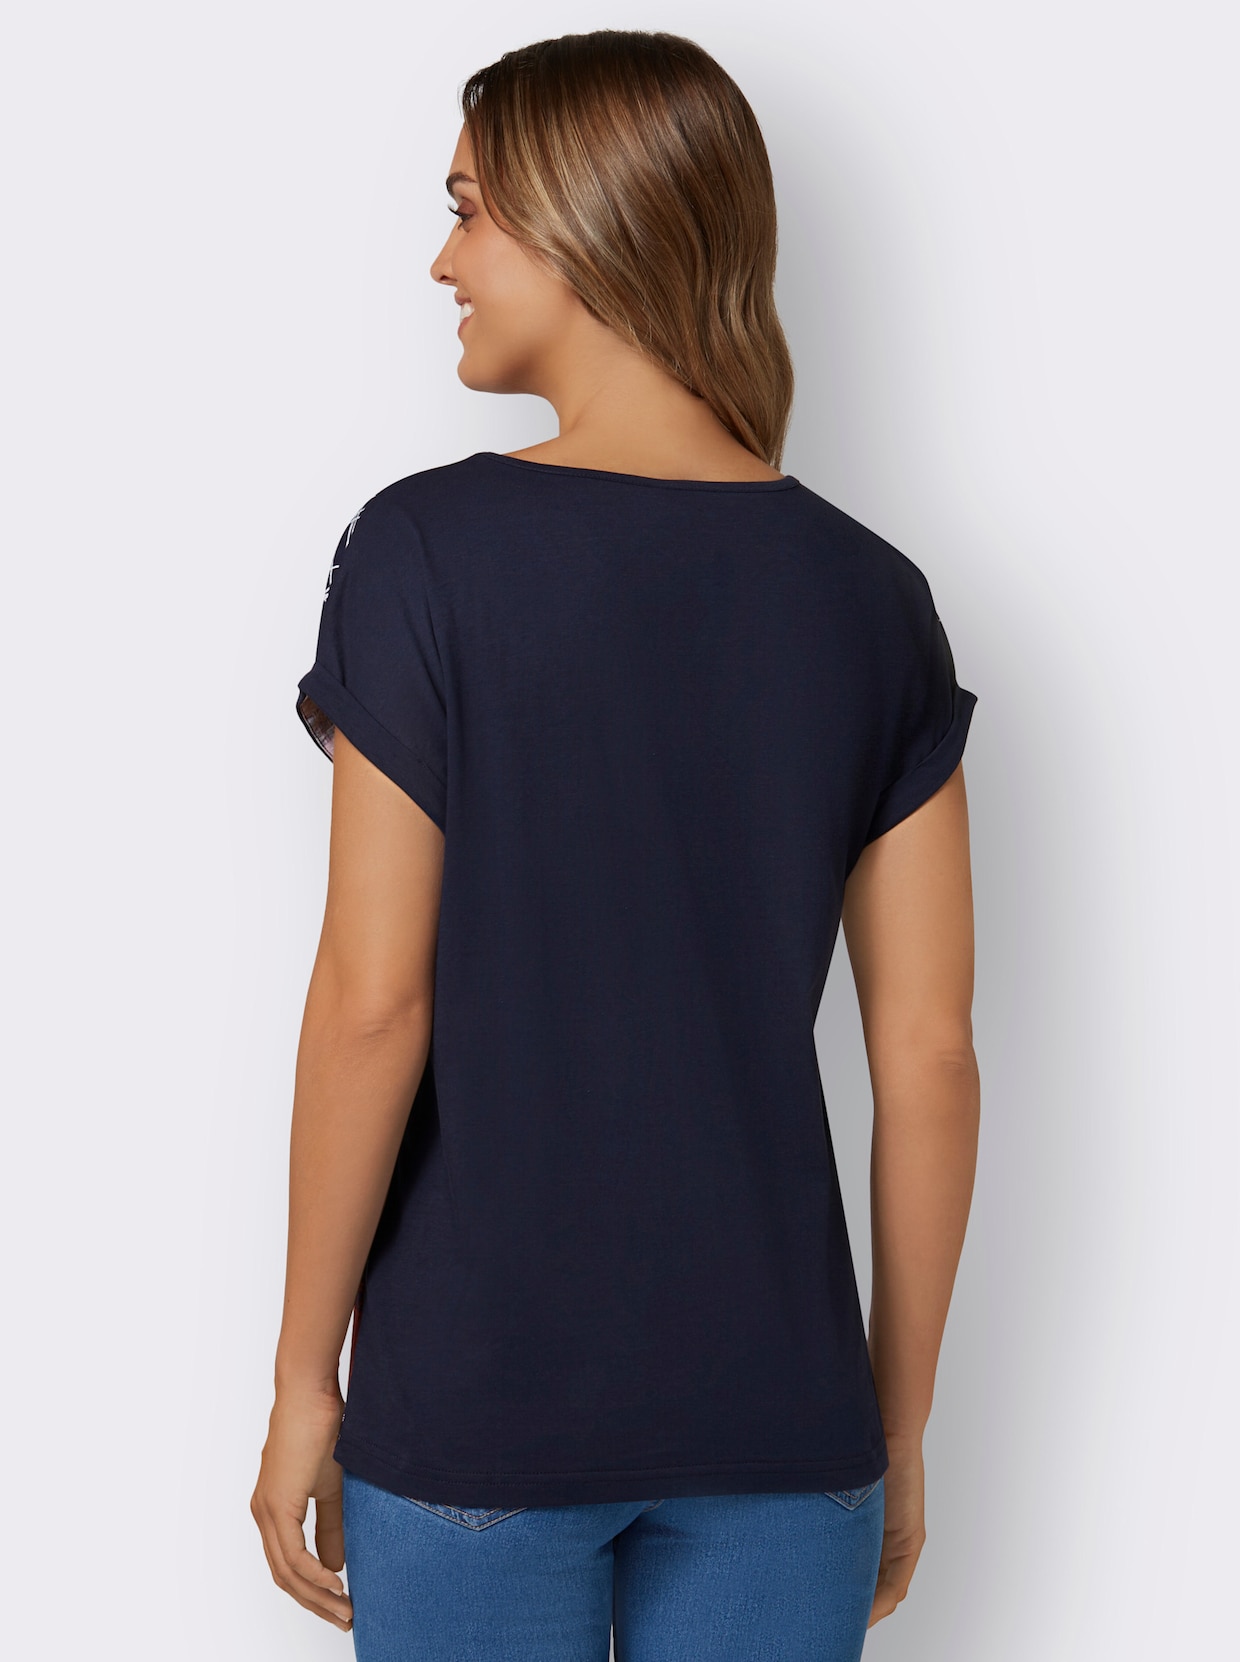 Kurzarm-Shirt - erdbeere-nachtblau-bedruckt